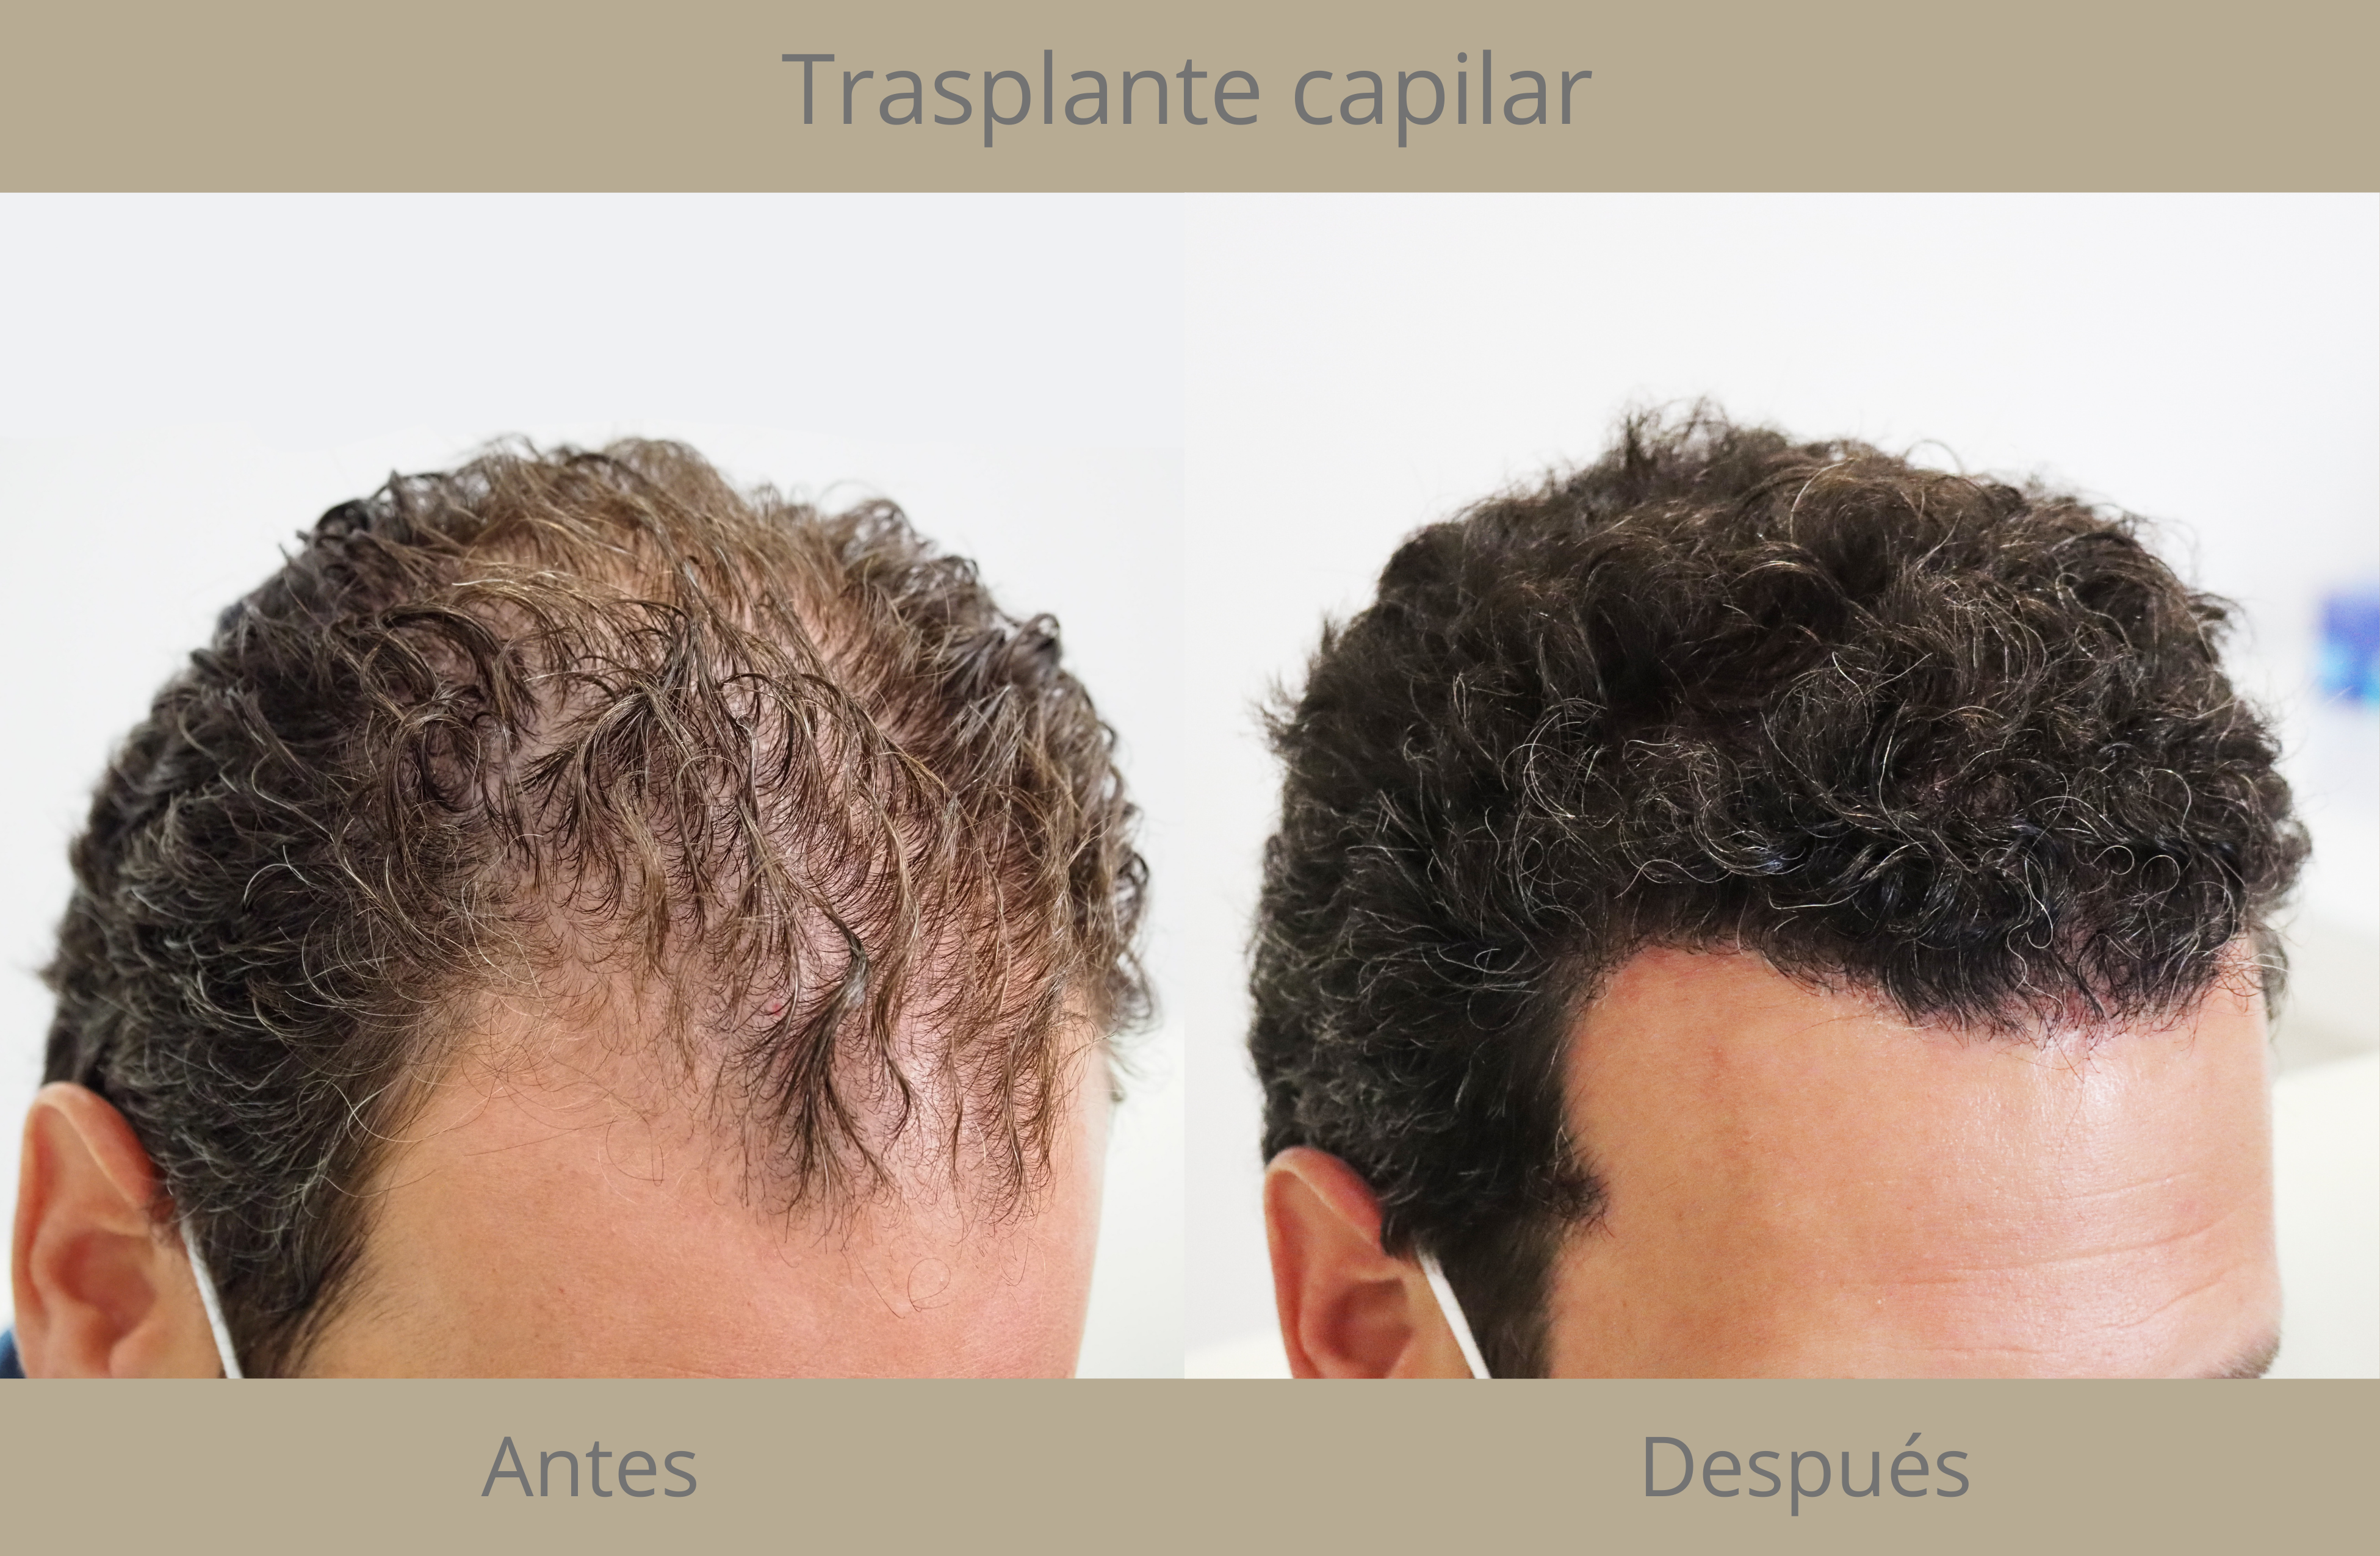 alopecia androgenética Instituto Médico del Prado